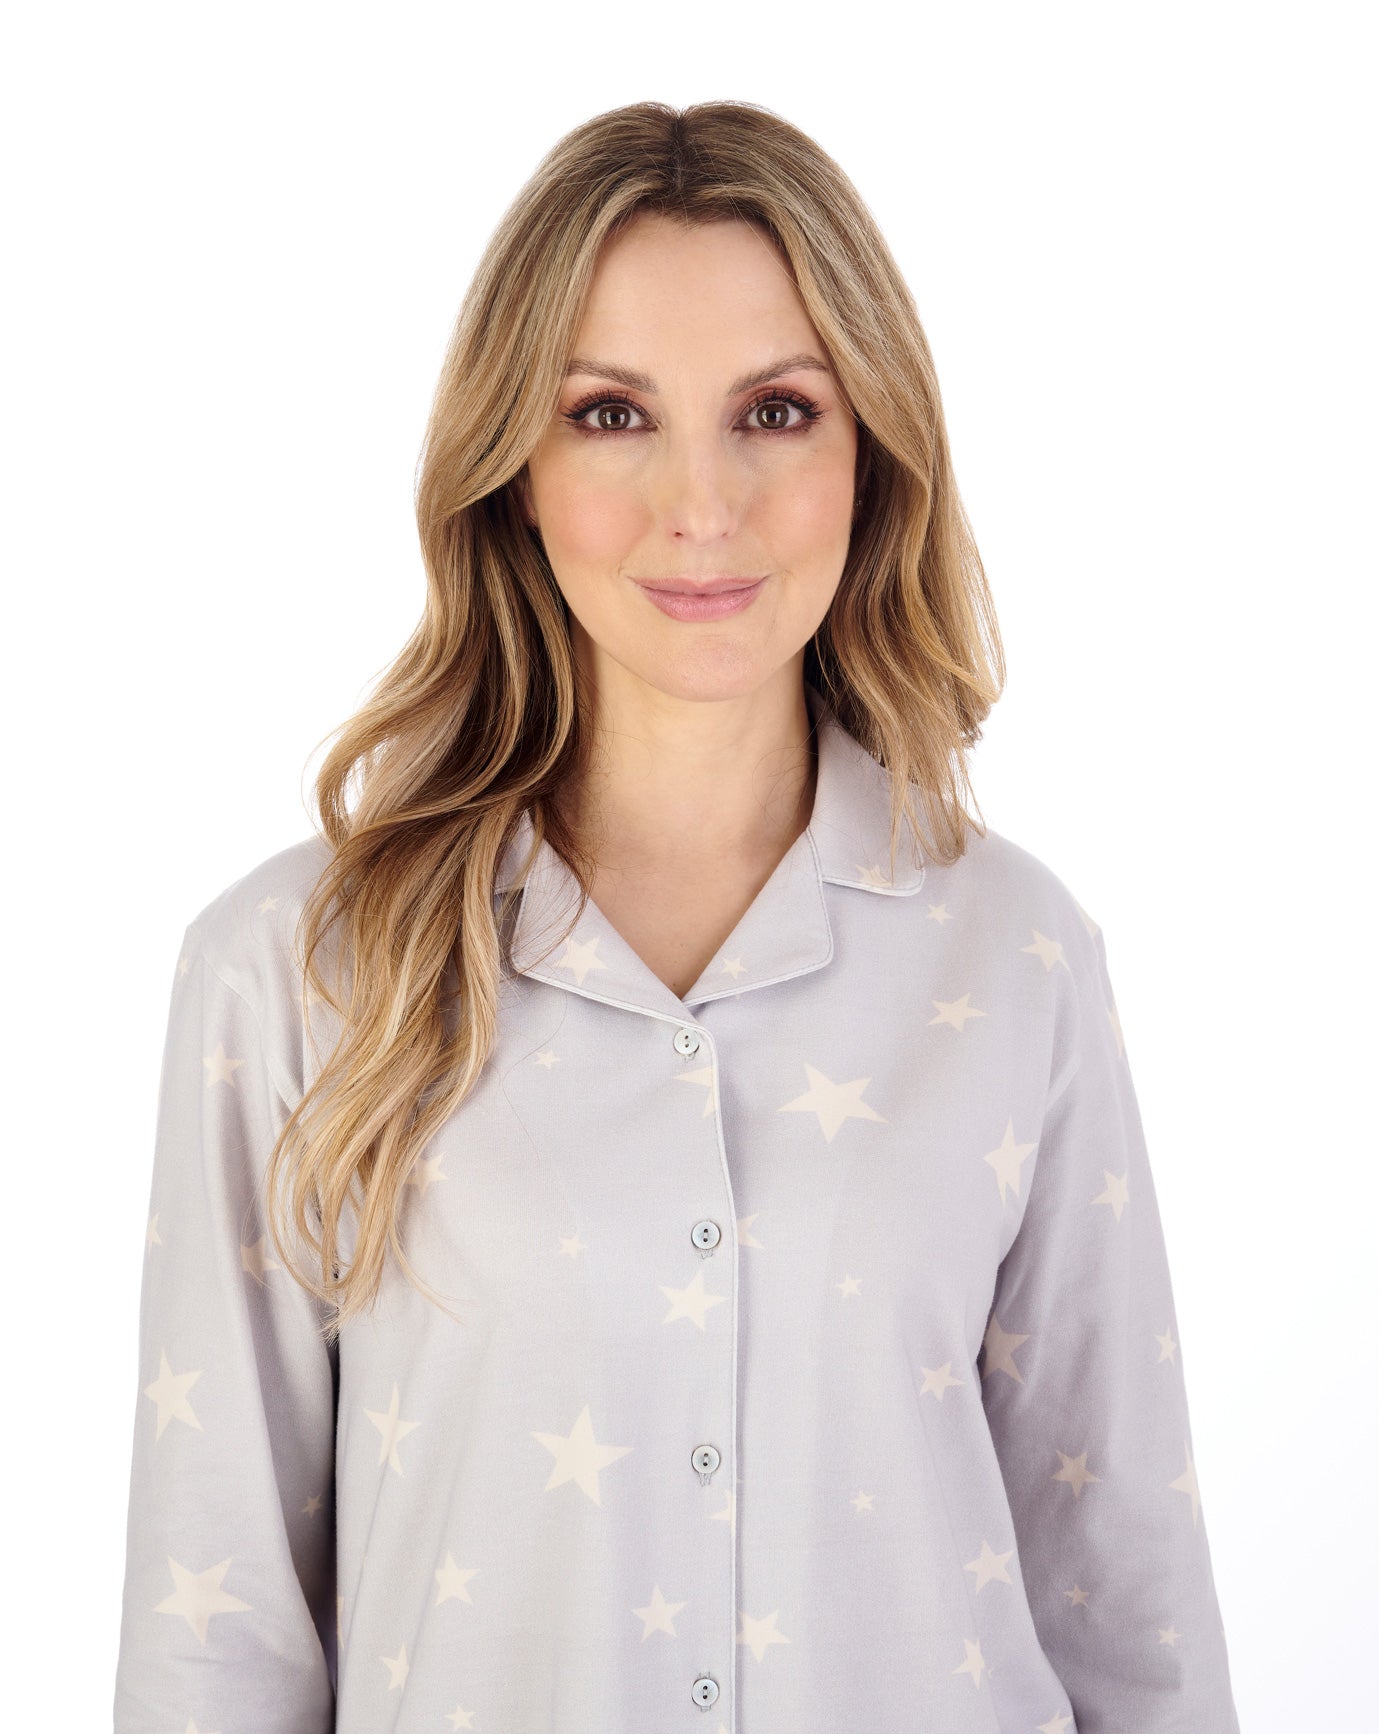 Star Print Cotton Mix Tailored Style Pyjama PJ04132